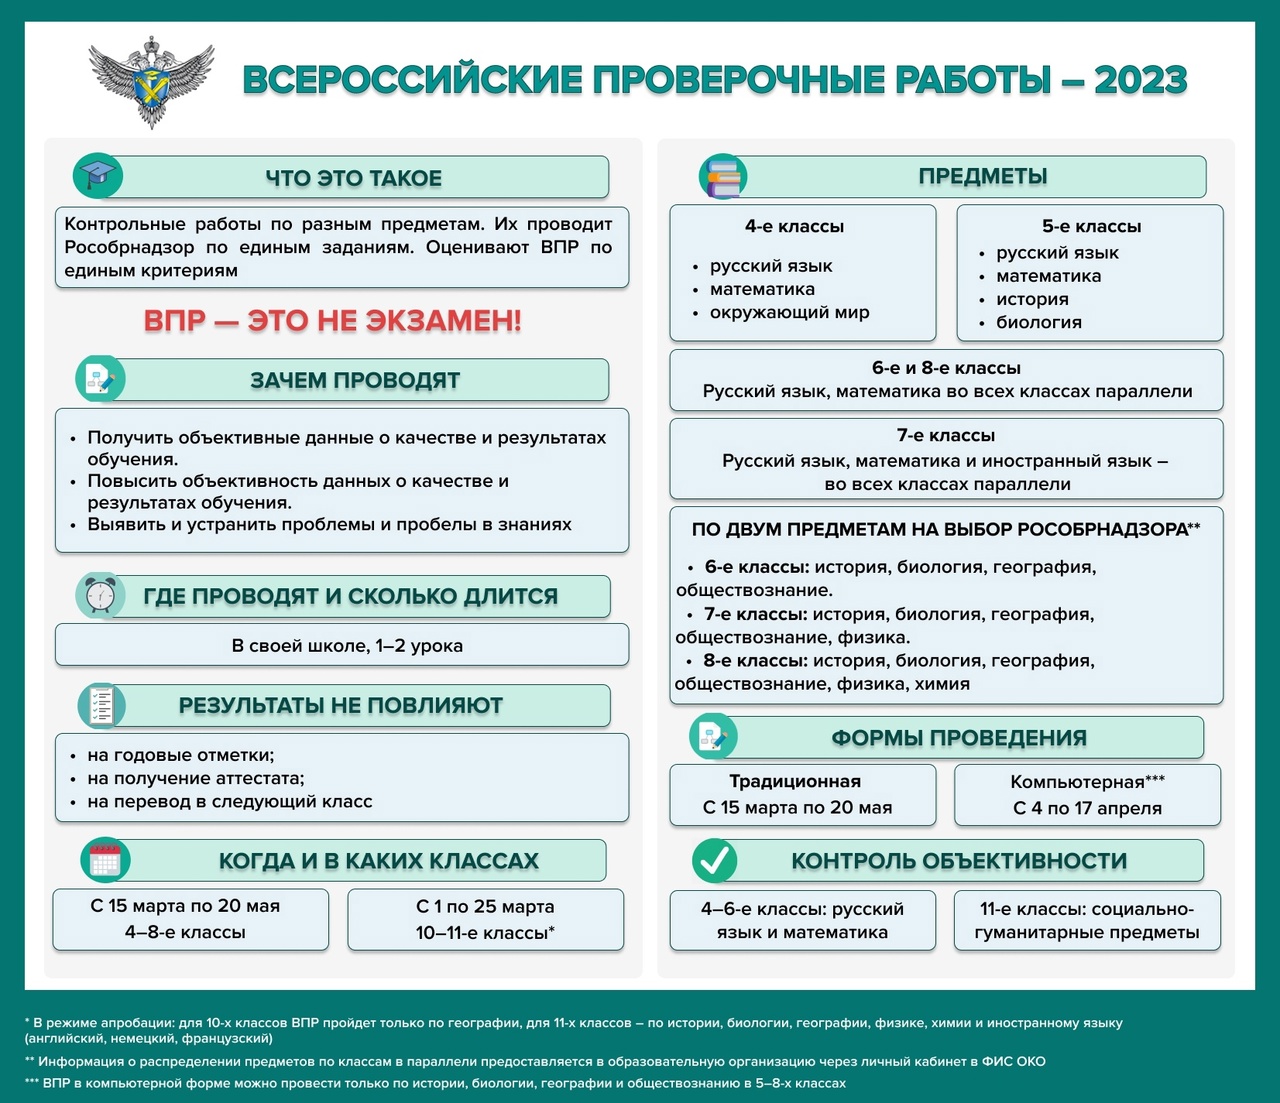 Всероссийские проверочные работы в 2023 году.